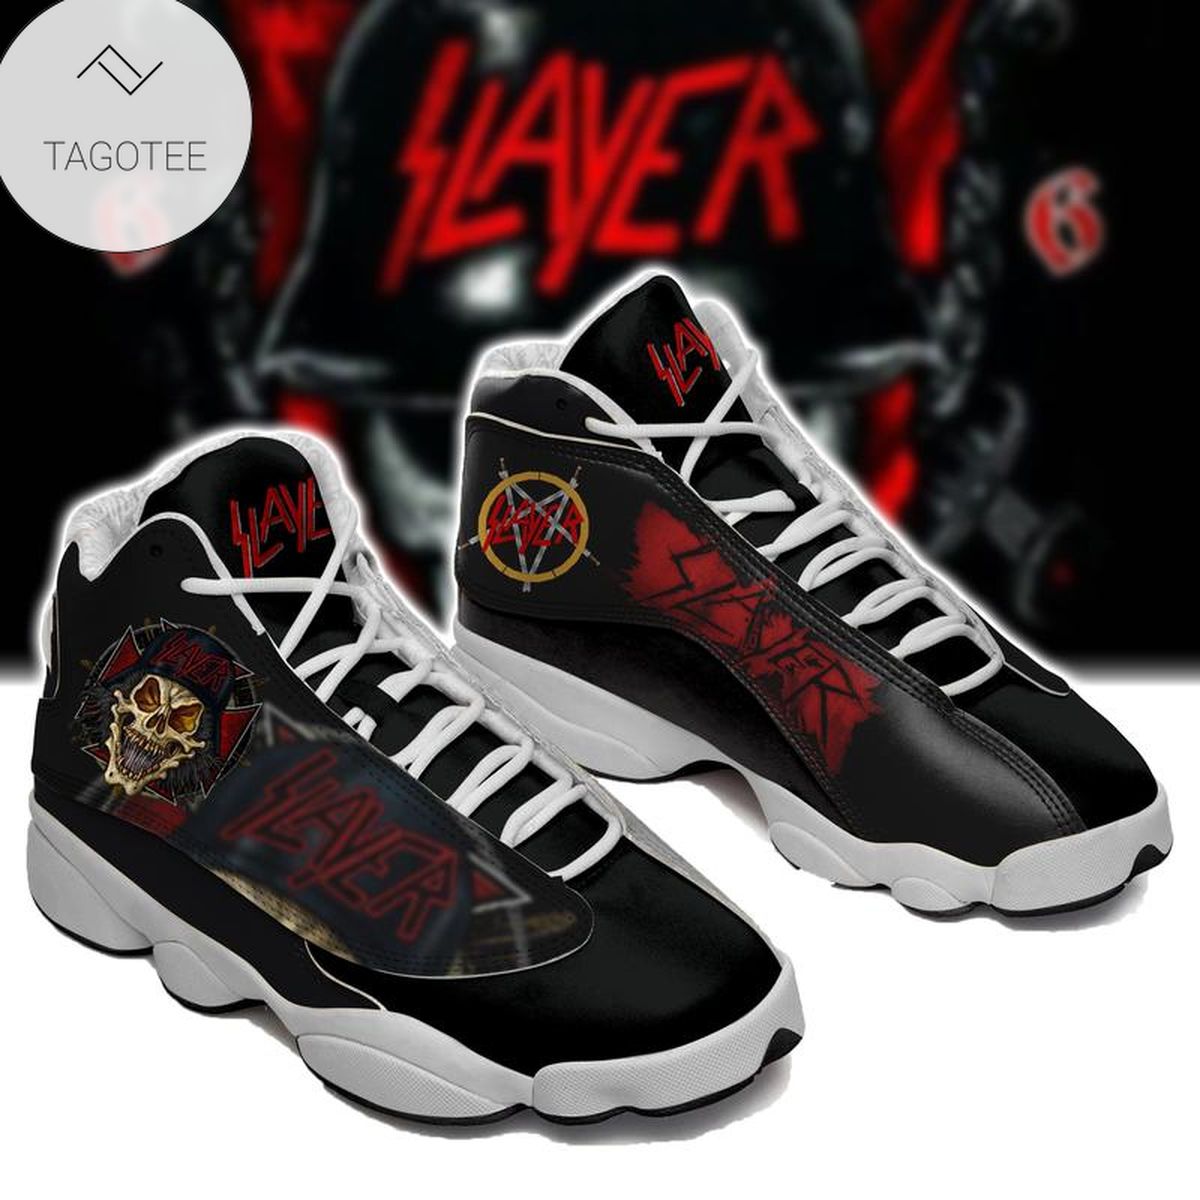 Slayer Band Sneakers Air Jordan 13 Shoes